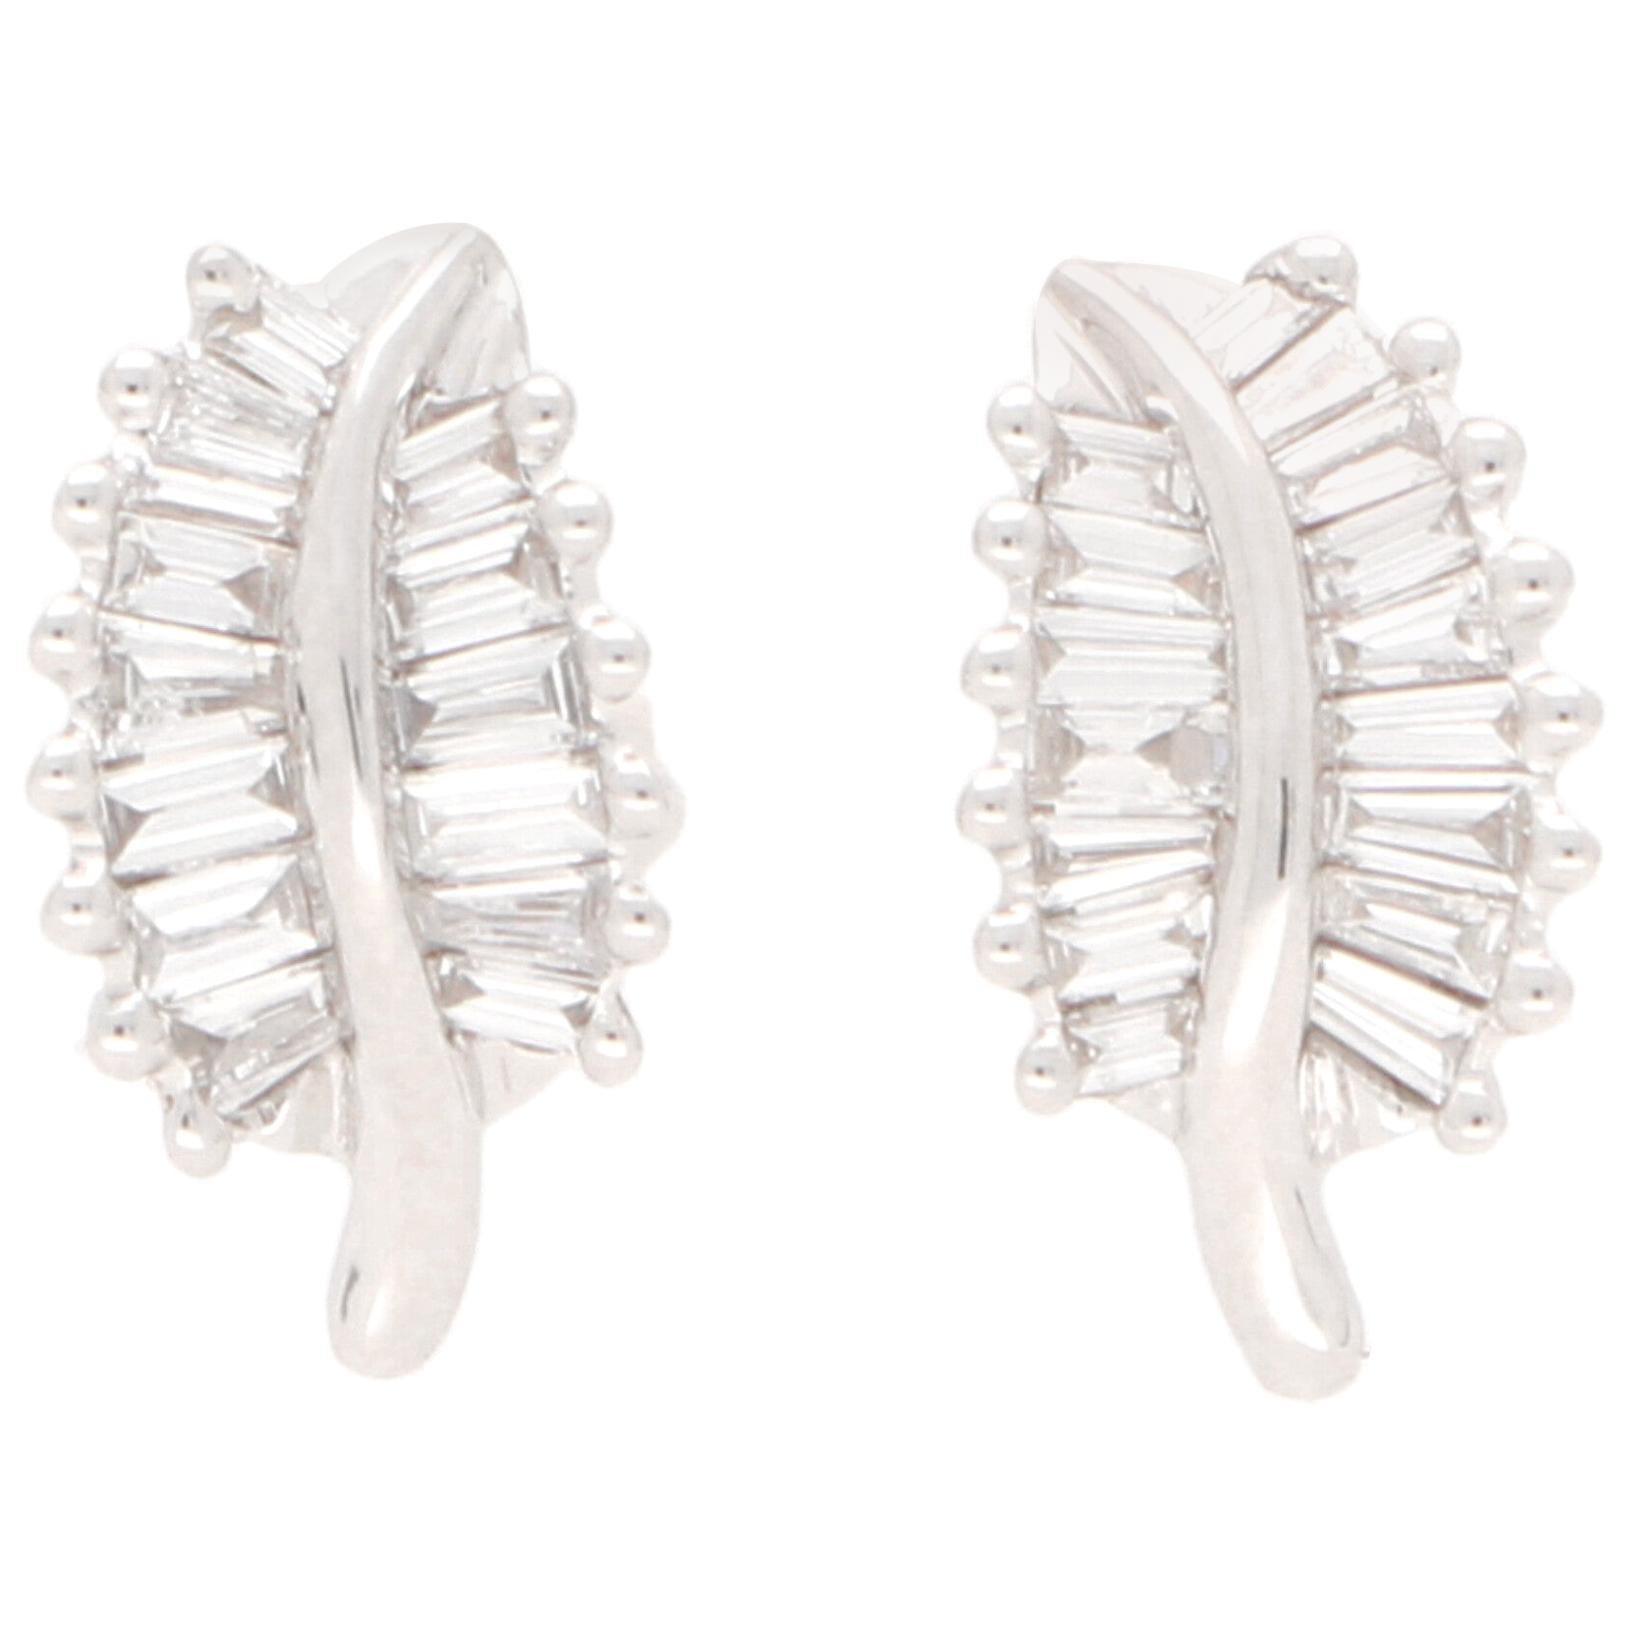 Baguette Cut Diamond Leaf Stud Earrings Set in 18 Karat White Gold